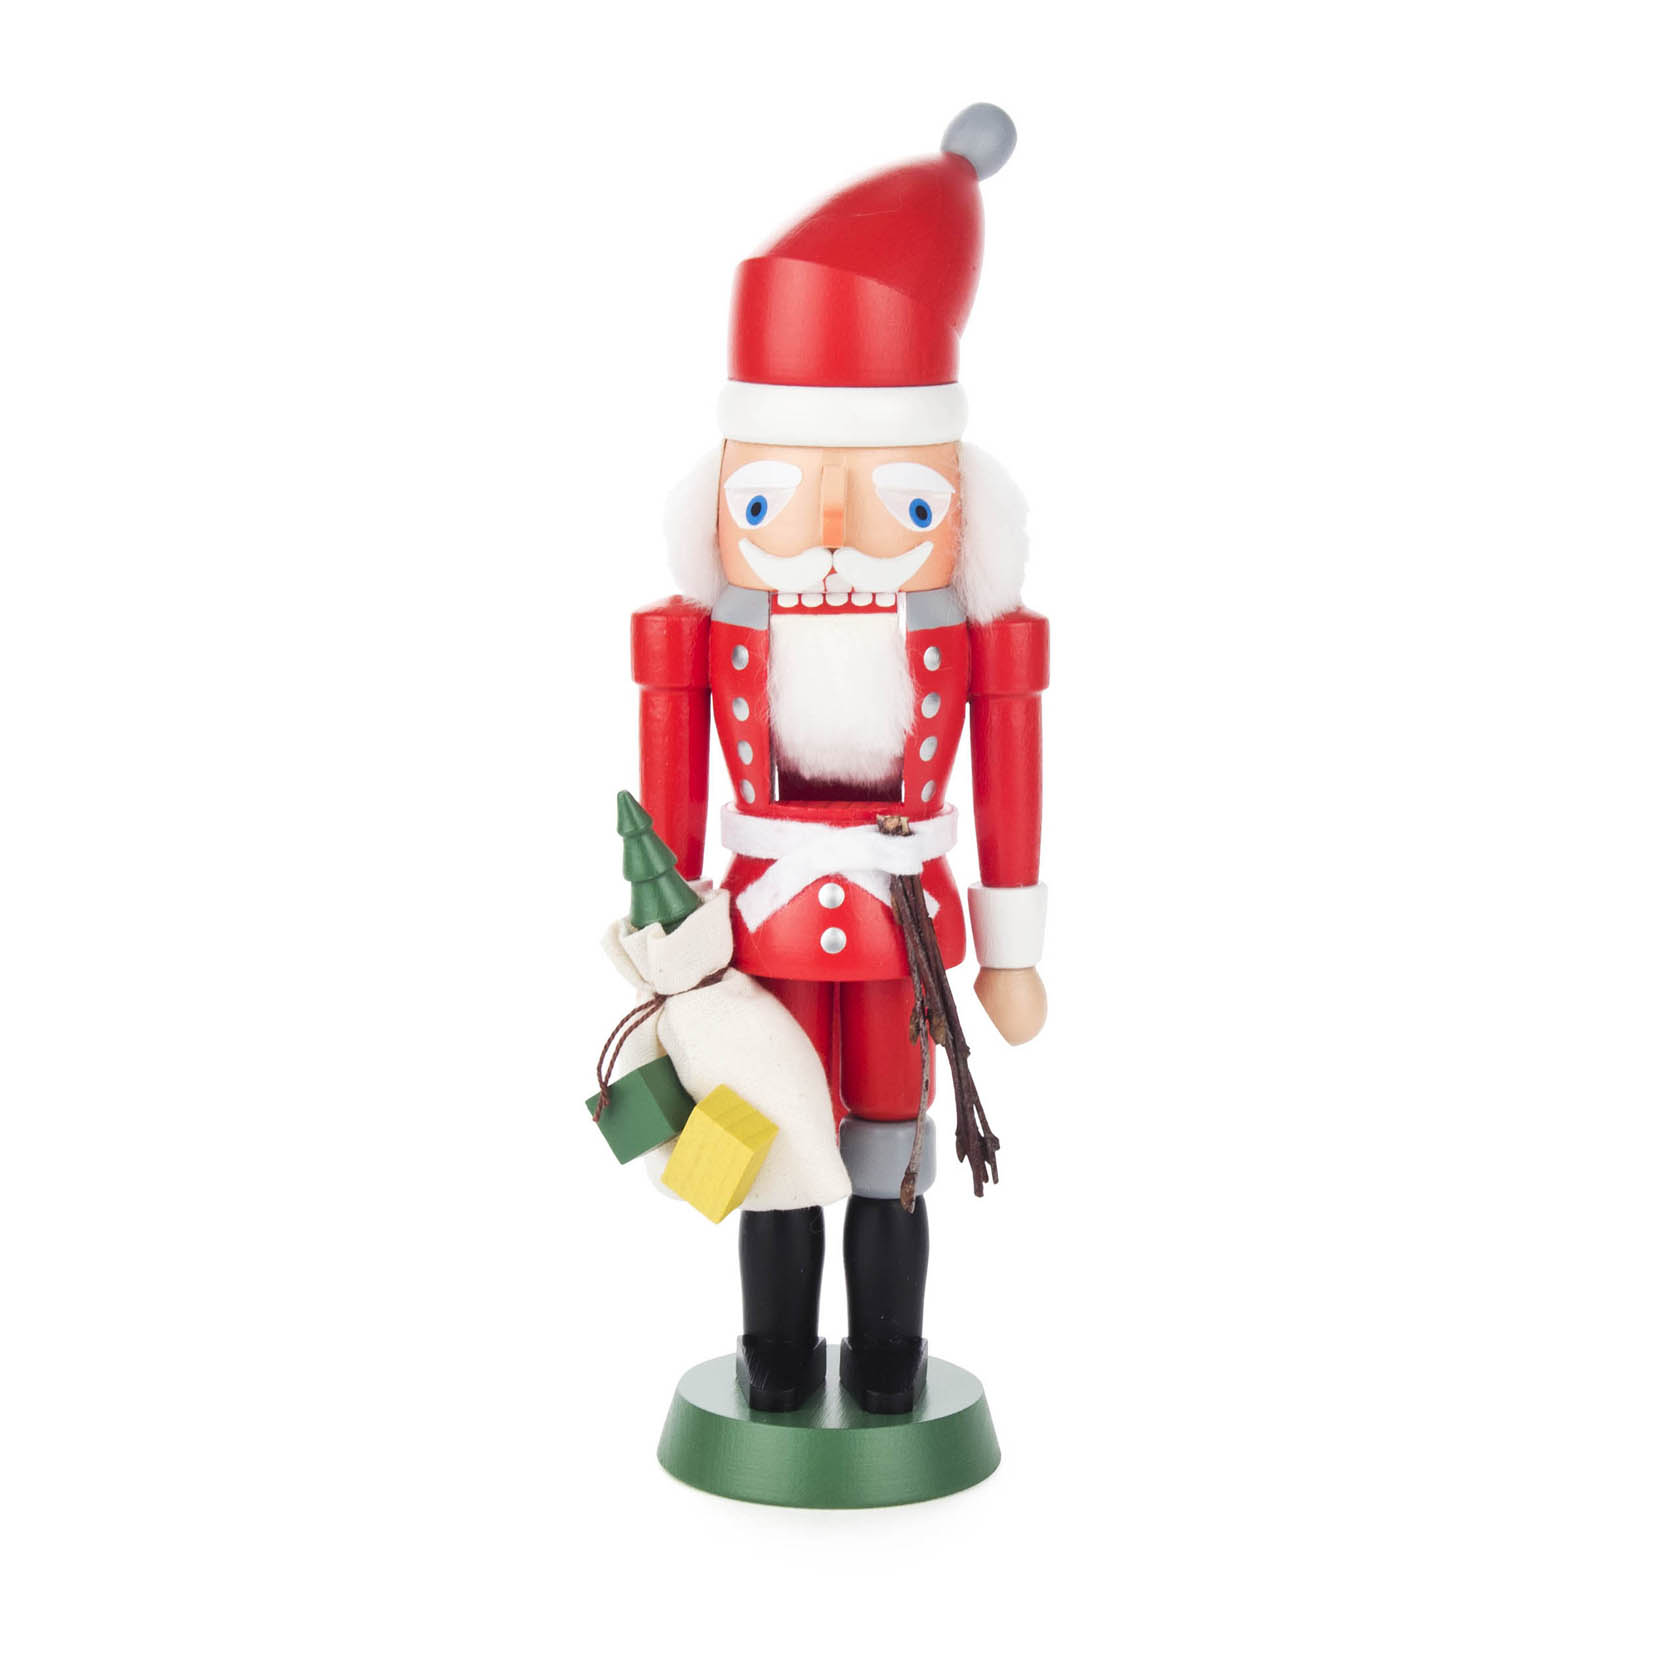 Nussknacker Weihnachtsmann rot, 21cm, mit Rute und Geschenkesack  im Dregeno Online Shop günstig kaufen